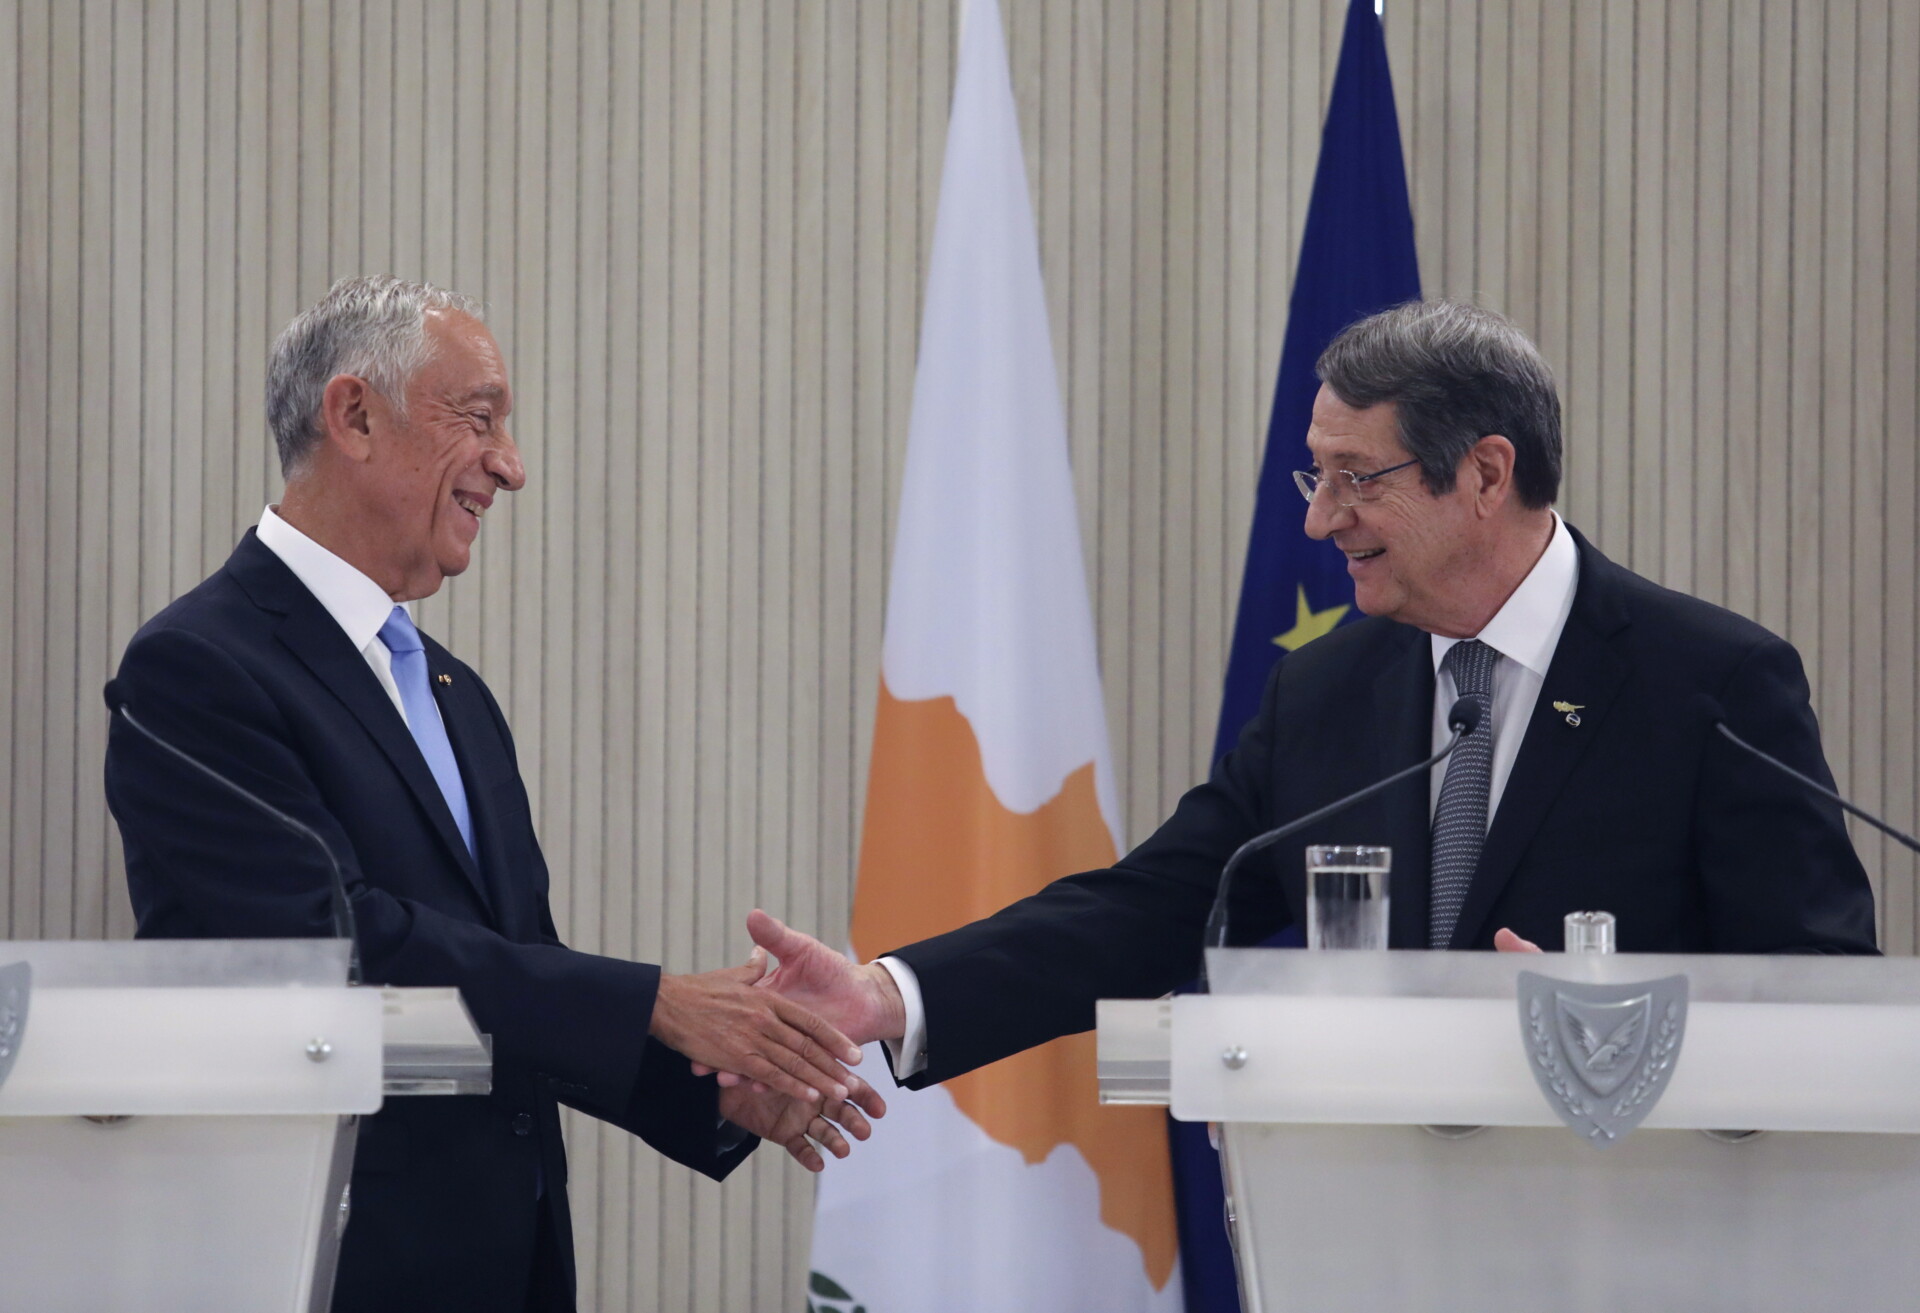 Ο πρόεδρος της Κυπριακής Δημοκρατίας, Νίκος Αναστασιάδης με τον πρόεδρο της Πορτογαλίας, Μαρσέλο Ρεμπέλο Ντε Σόουζα © EPA/YIANNIS KOURTOGLOU / POOL